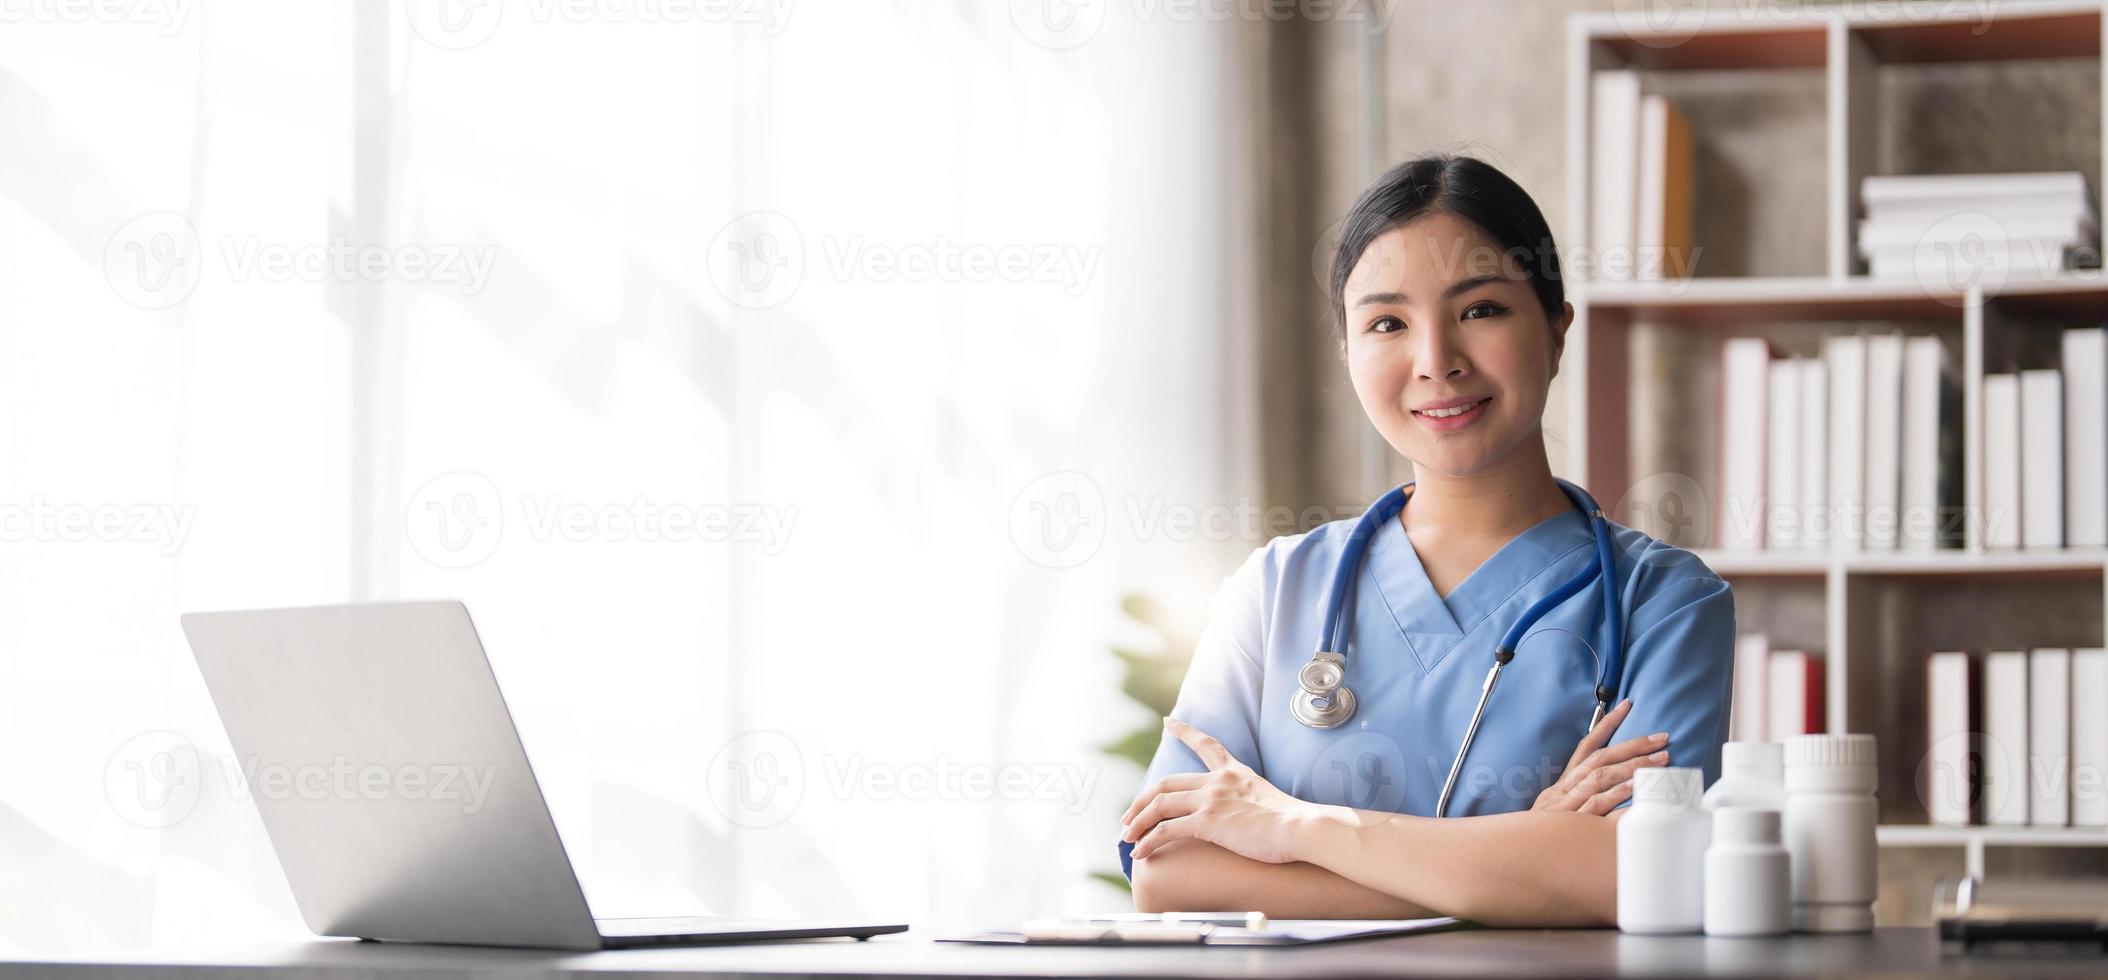 médico asiático joven hermosa mujer sonriendo usando una computadora portátil y escribiendo algo en papeleo o papel blanco en el portapapeles en la oficina del hospital, concepto médico de atención médica foto